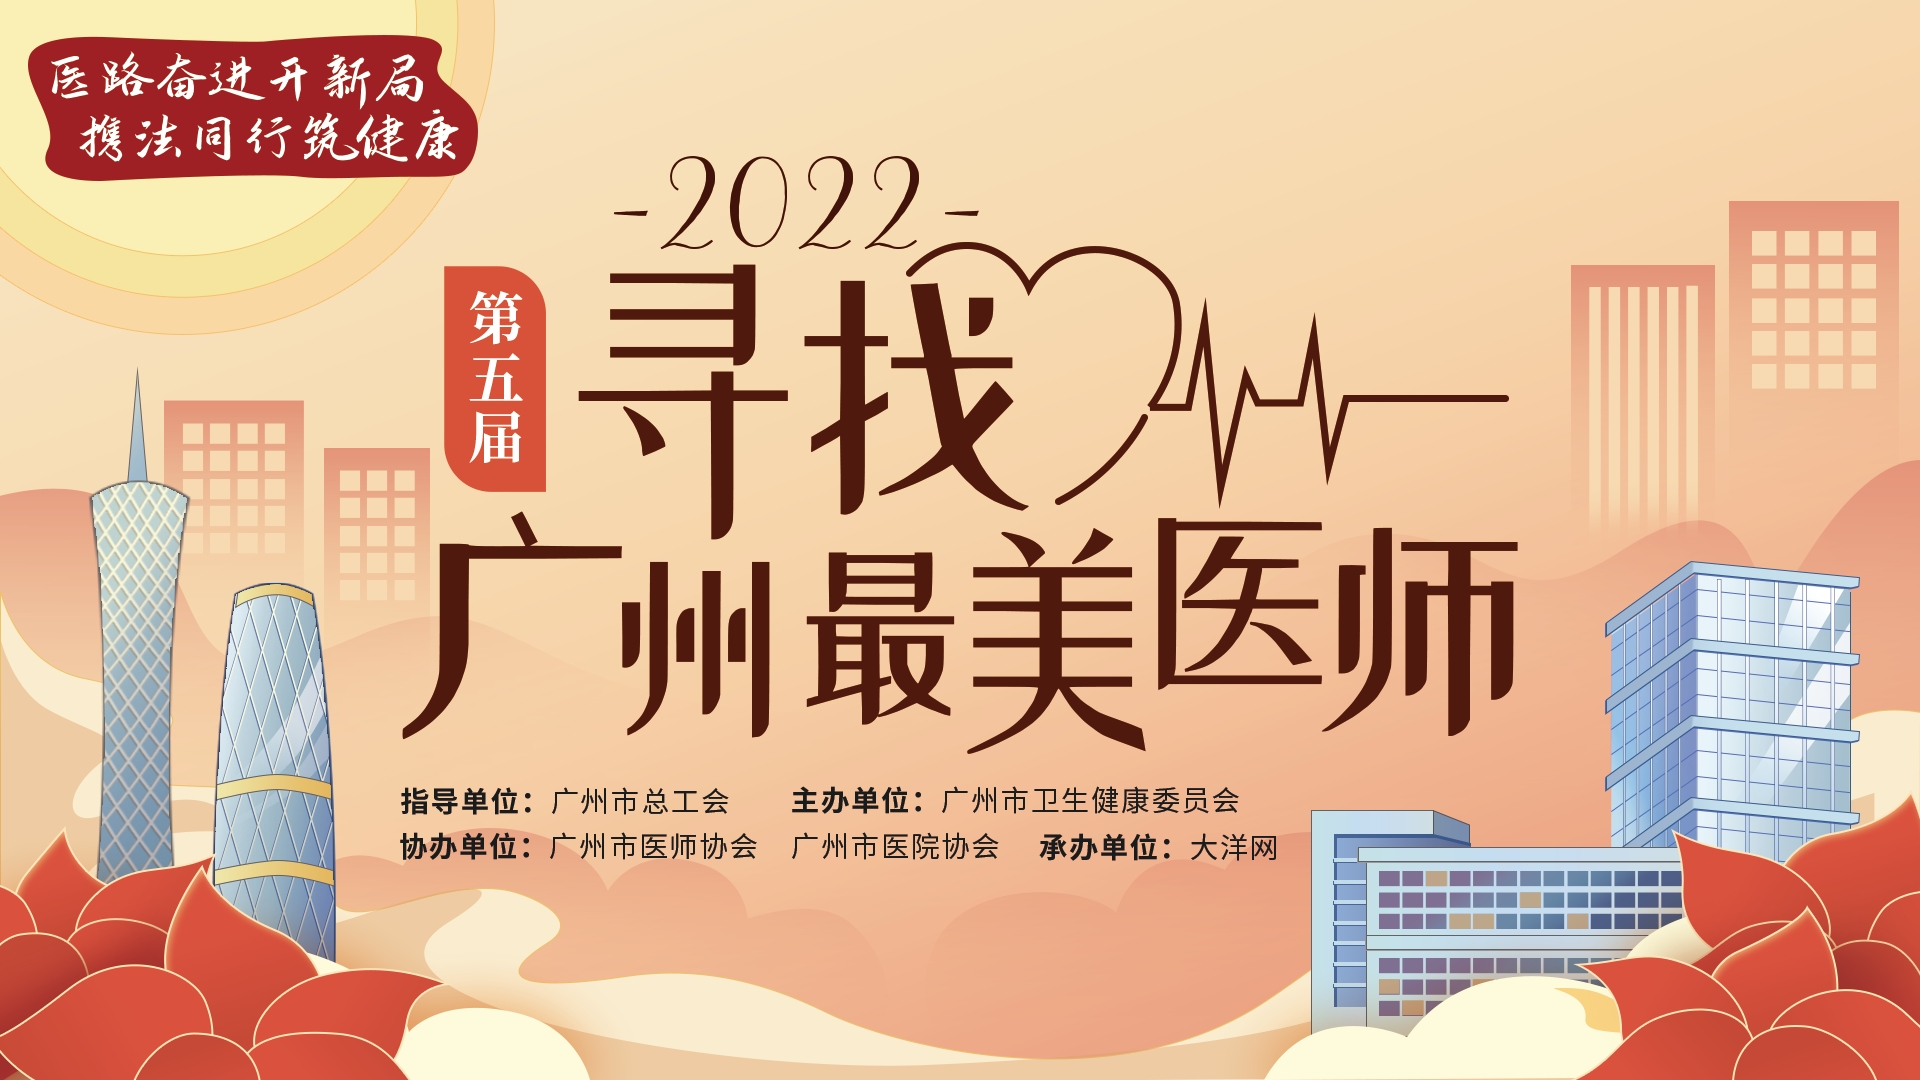 2022年第五届寻找“广州最美医师”邀您点赞